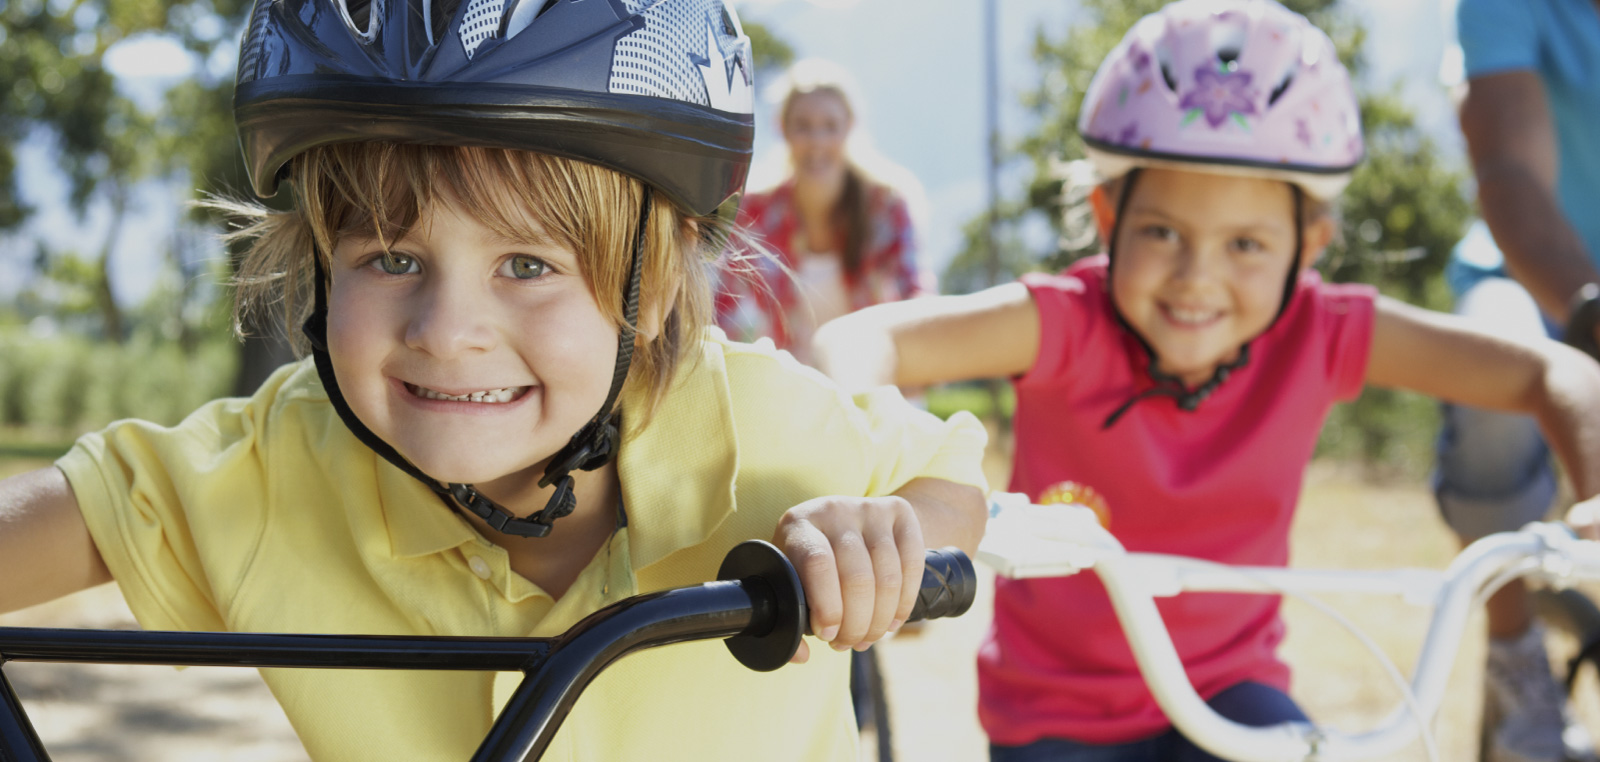 kids riding bikes smiling